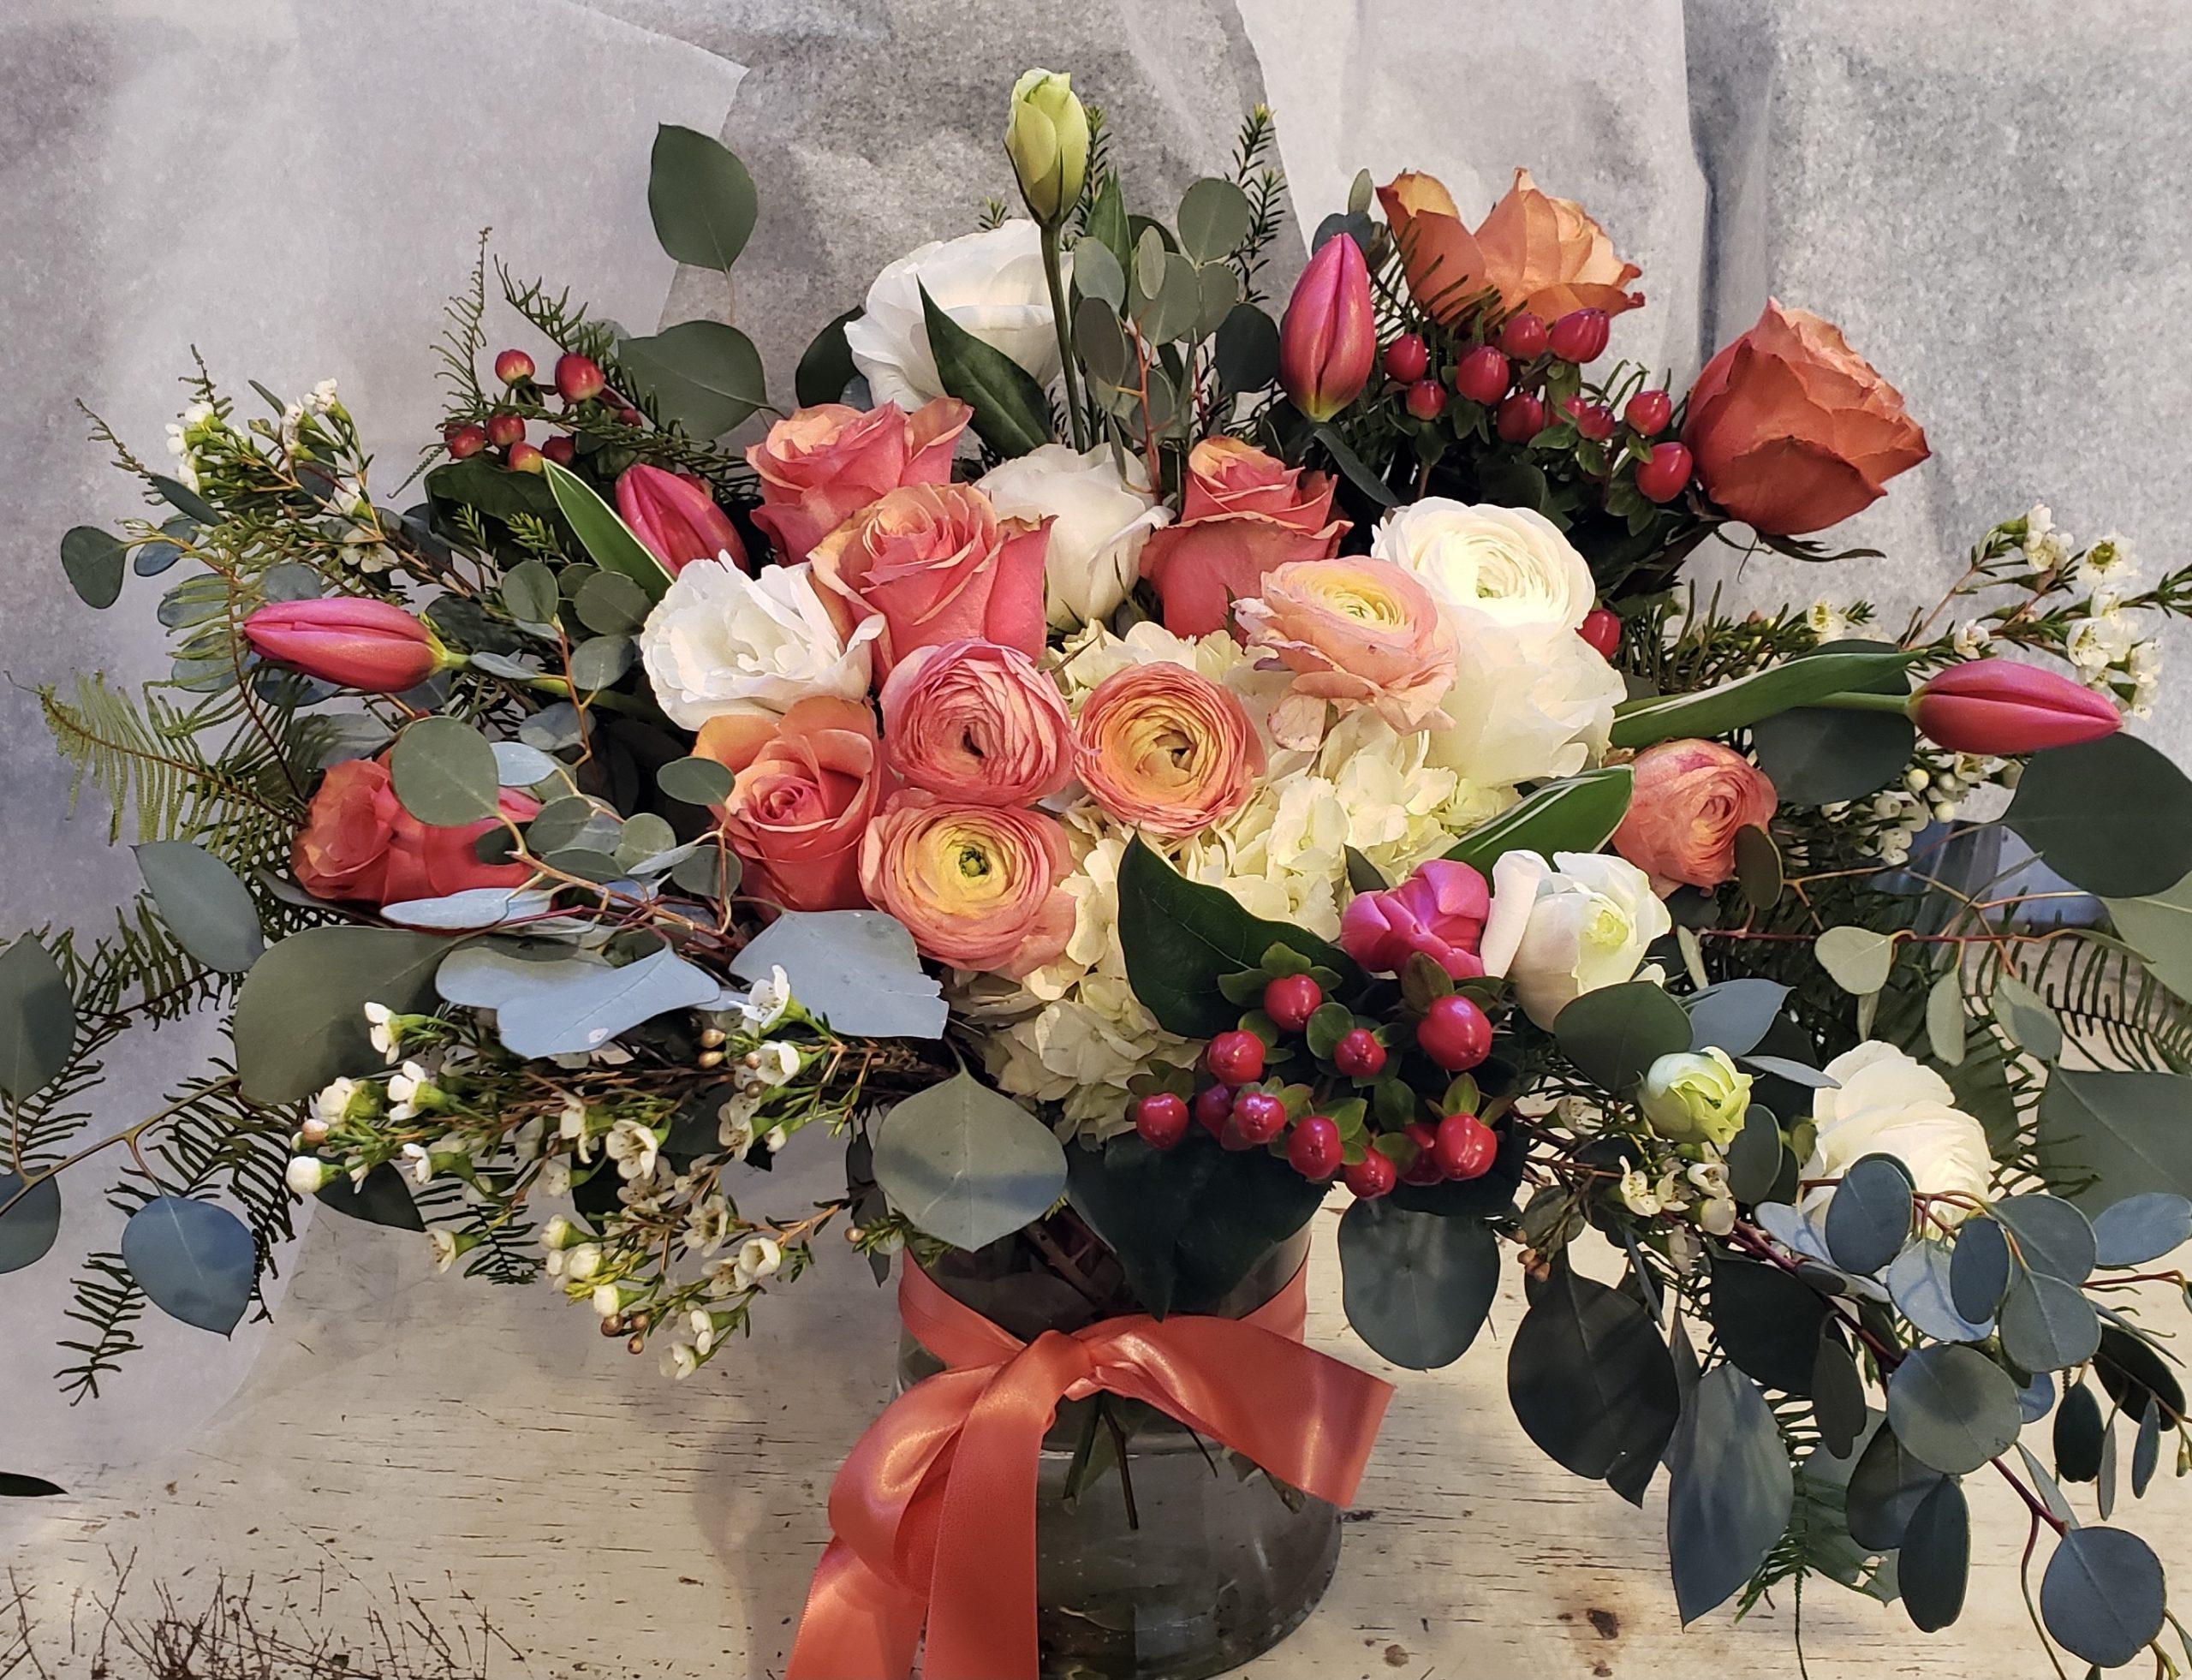 Floral Arrangements by Camrose Hill in Stillwater, MN